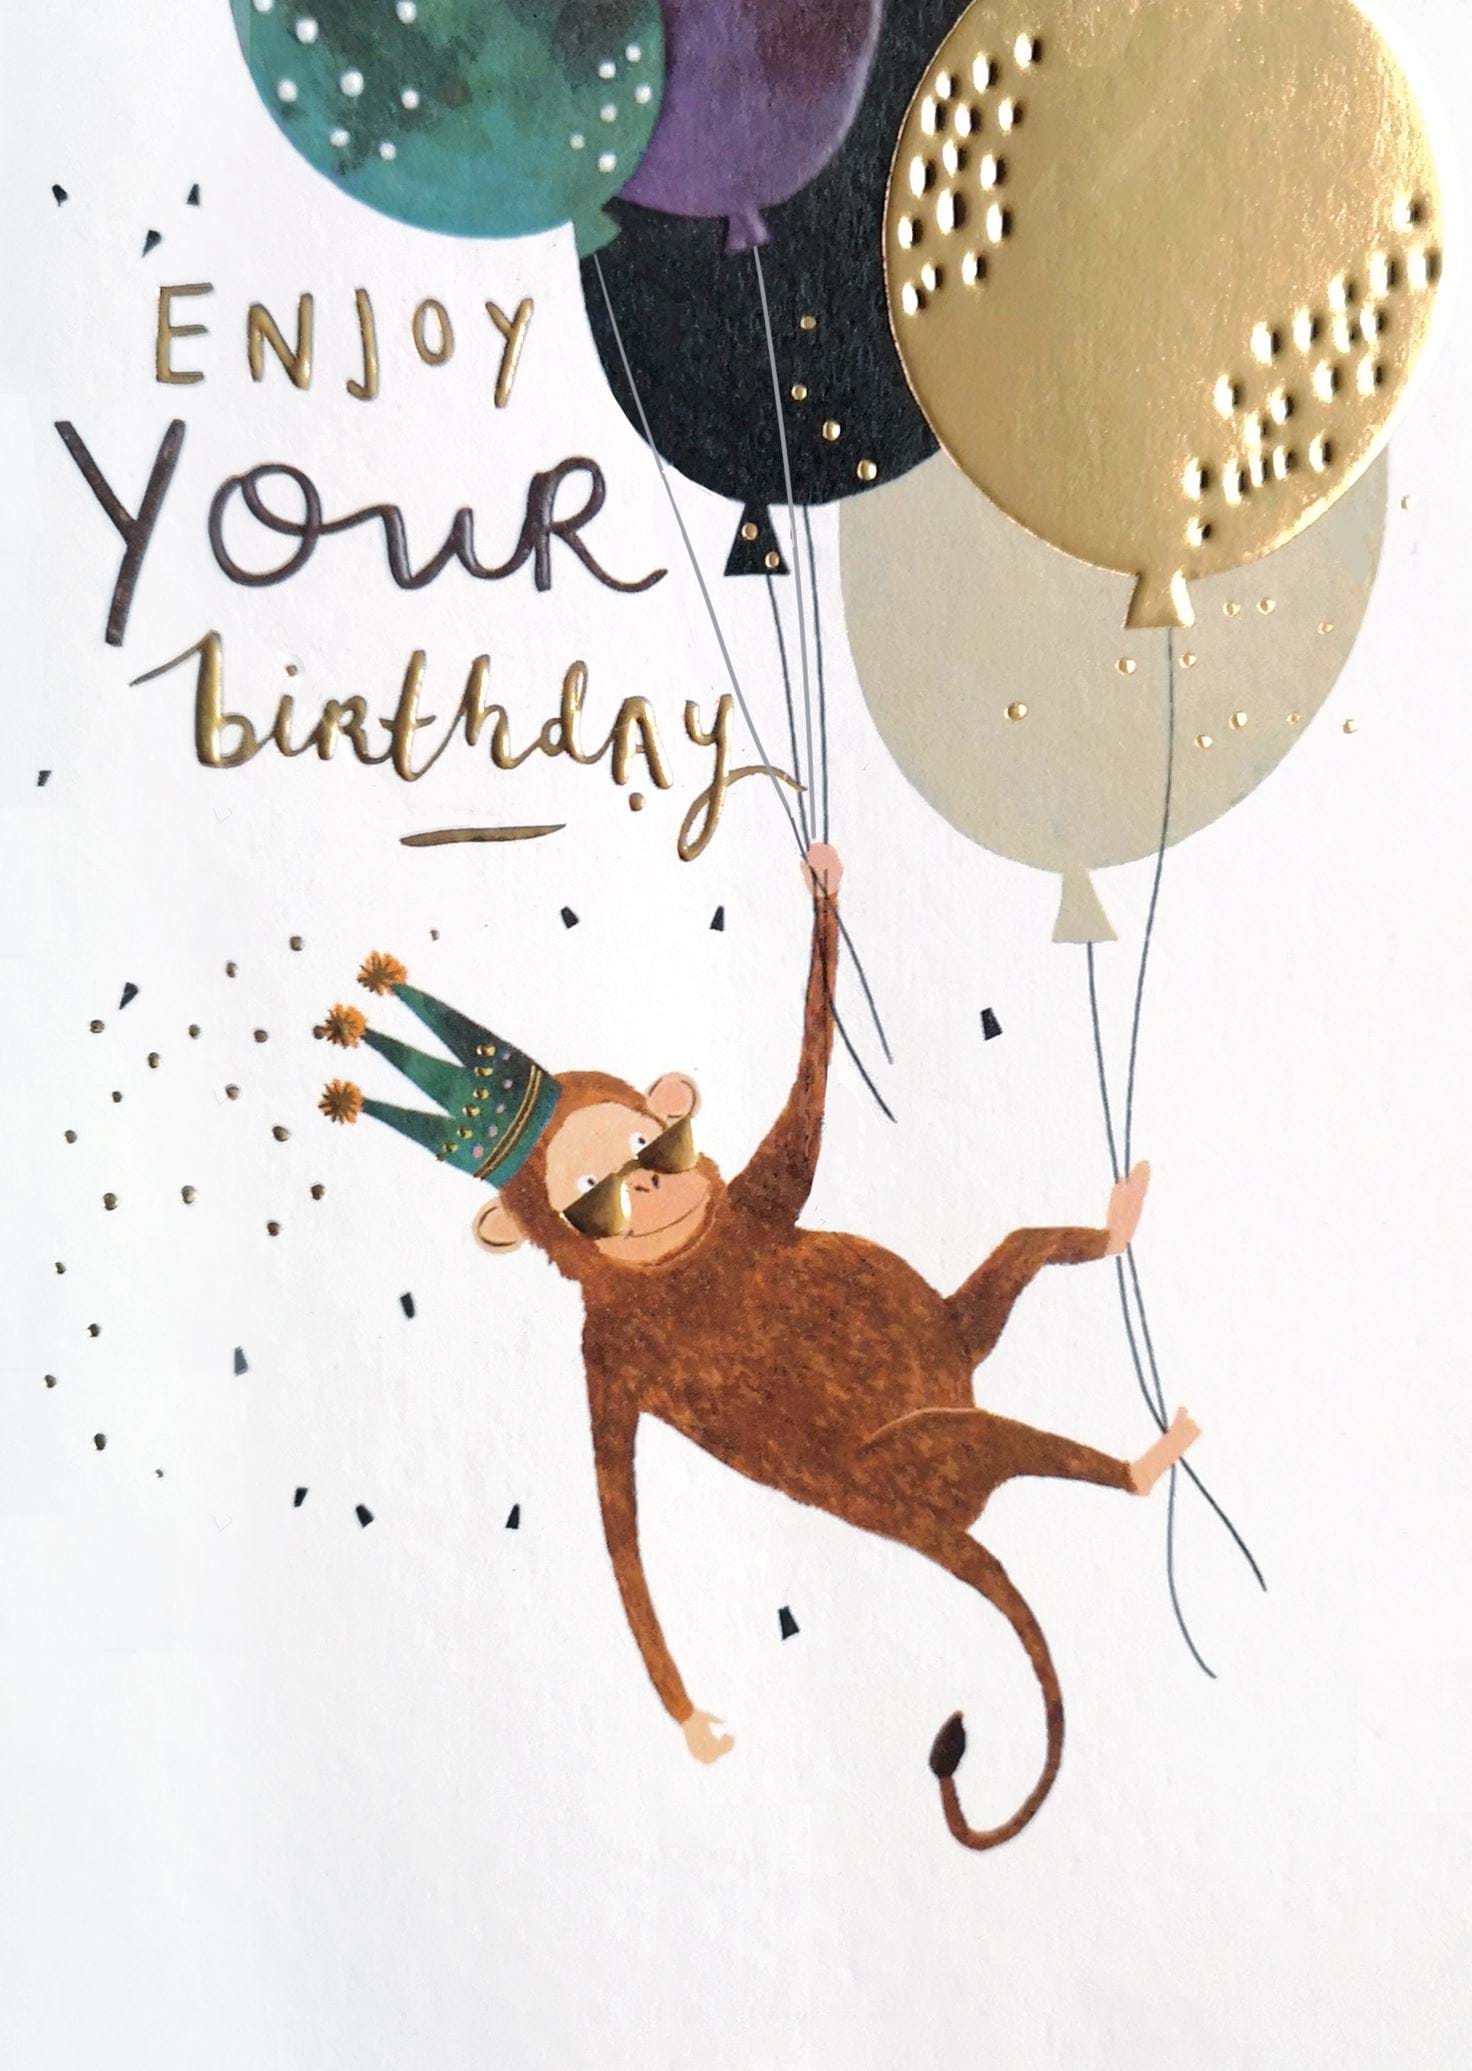 Monkey Birthday Card